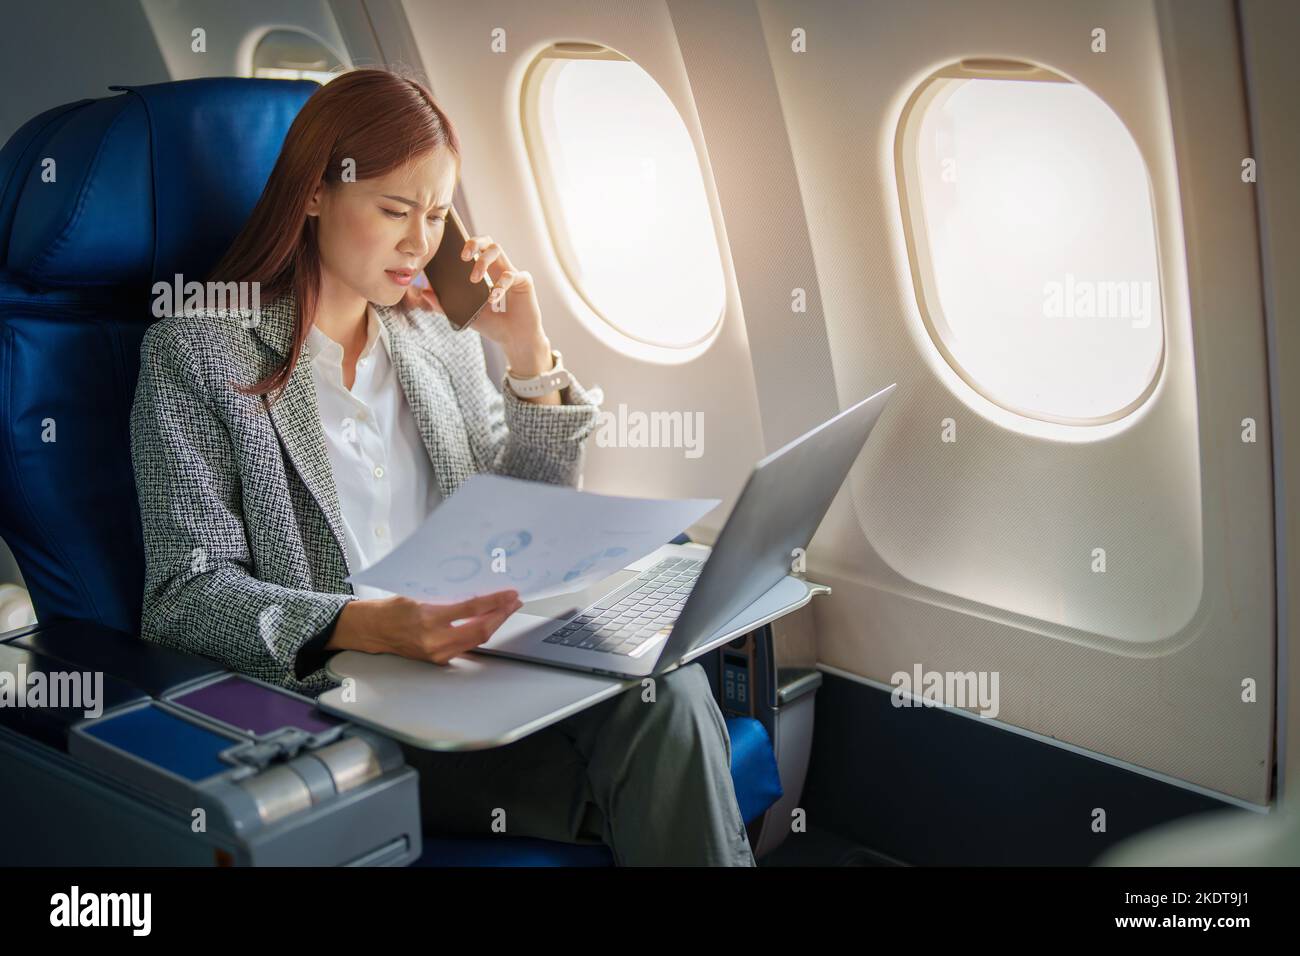 Portrait d'une femme d'affaires ou d'un entrepreneur asiatique couronné de succès dans un costume formel sur un avion assis en classe affaires à l'aide d'un téléphone, ordinateur portable Banque D'Images